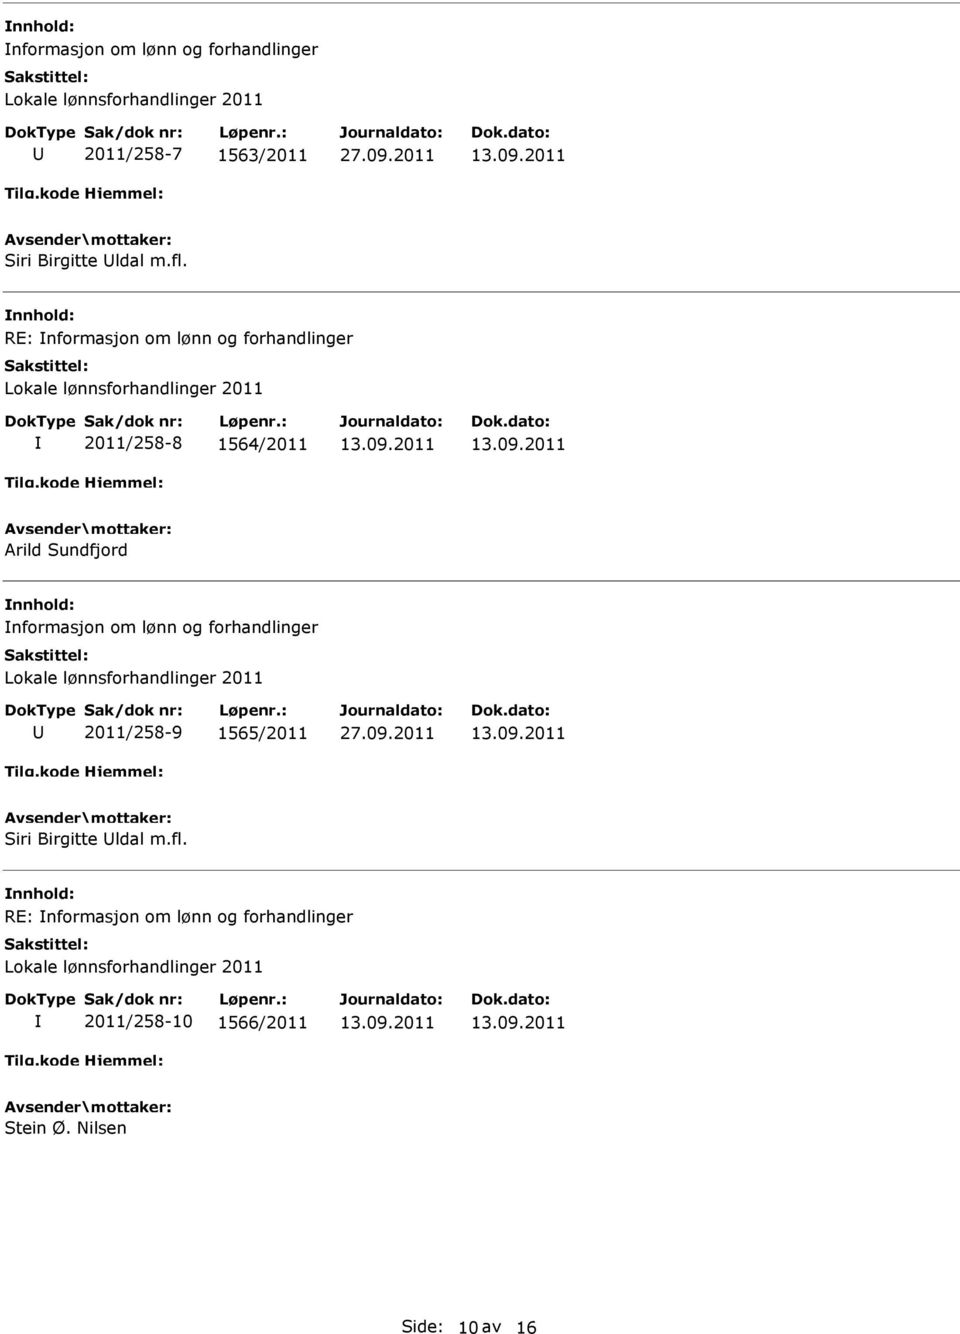 nformasjon om lønn og forhandlinger 2011/258-9 1565/2011 Siri Birgitte ldal m.fl.